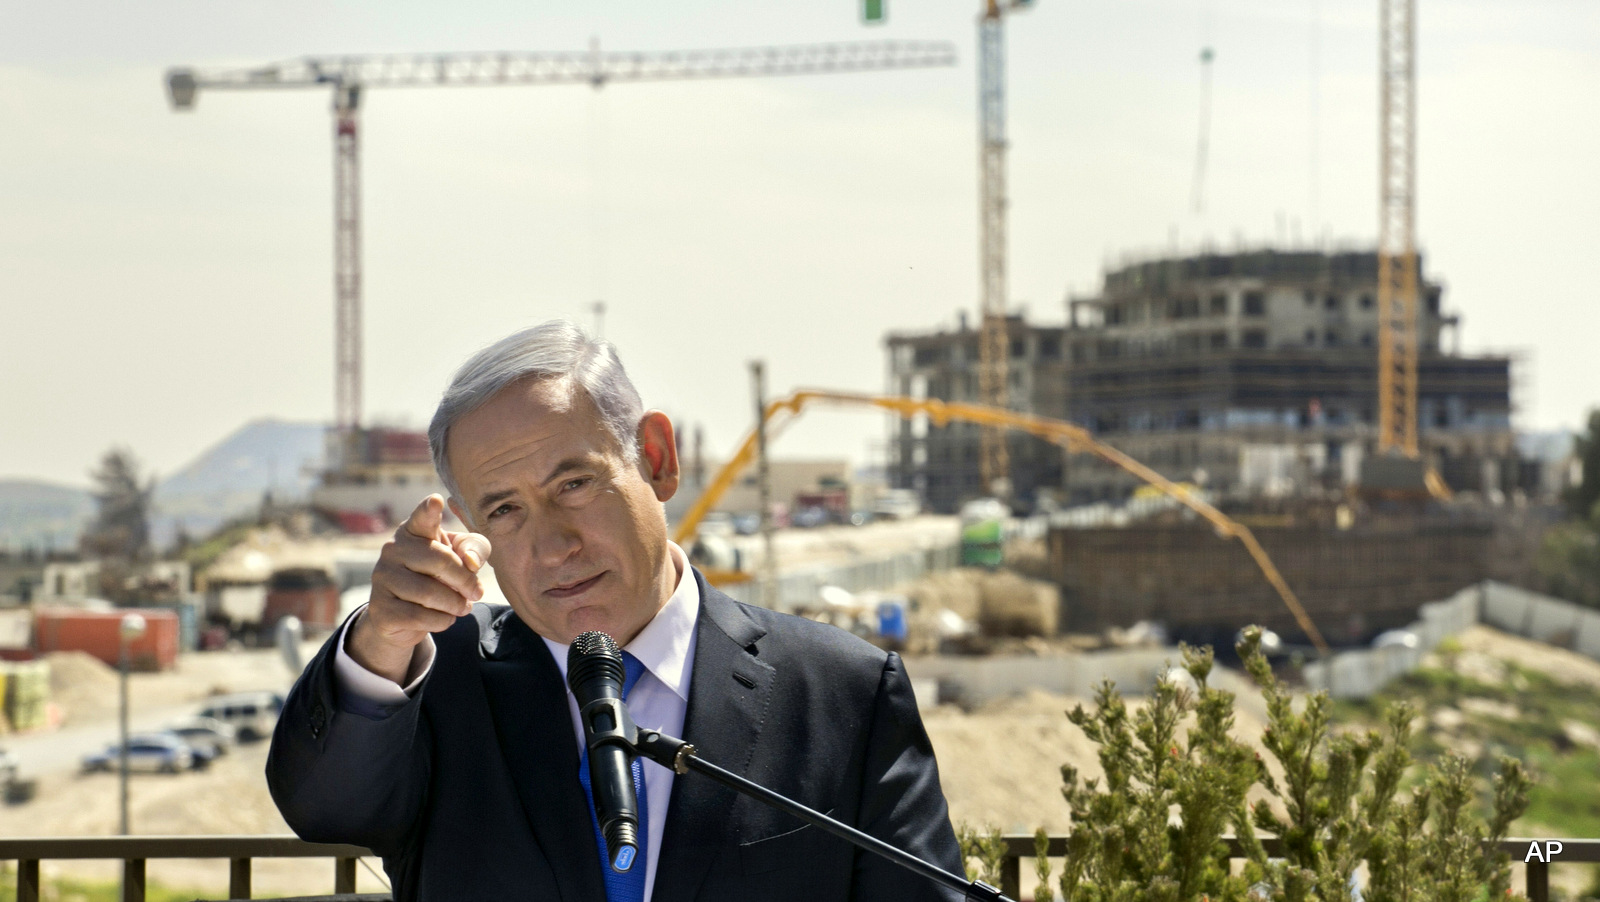 Israeli Prime Minister Benjamin Netanyahu speaks as he visits a settlement construction site in Har Homa